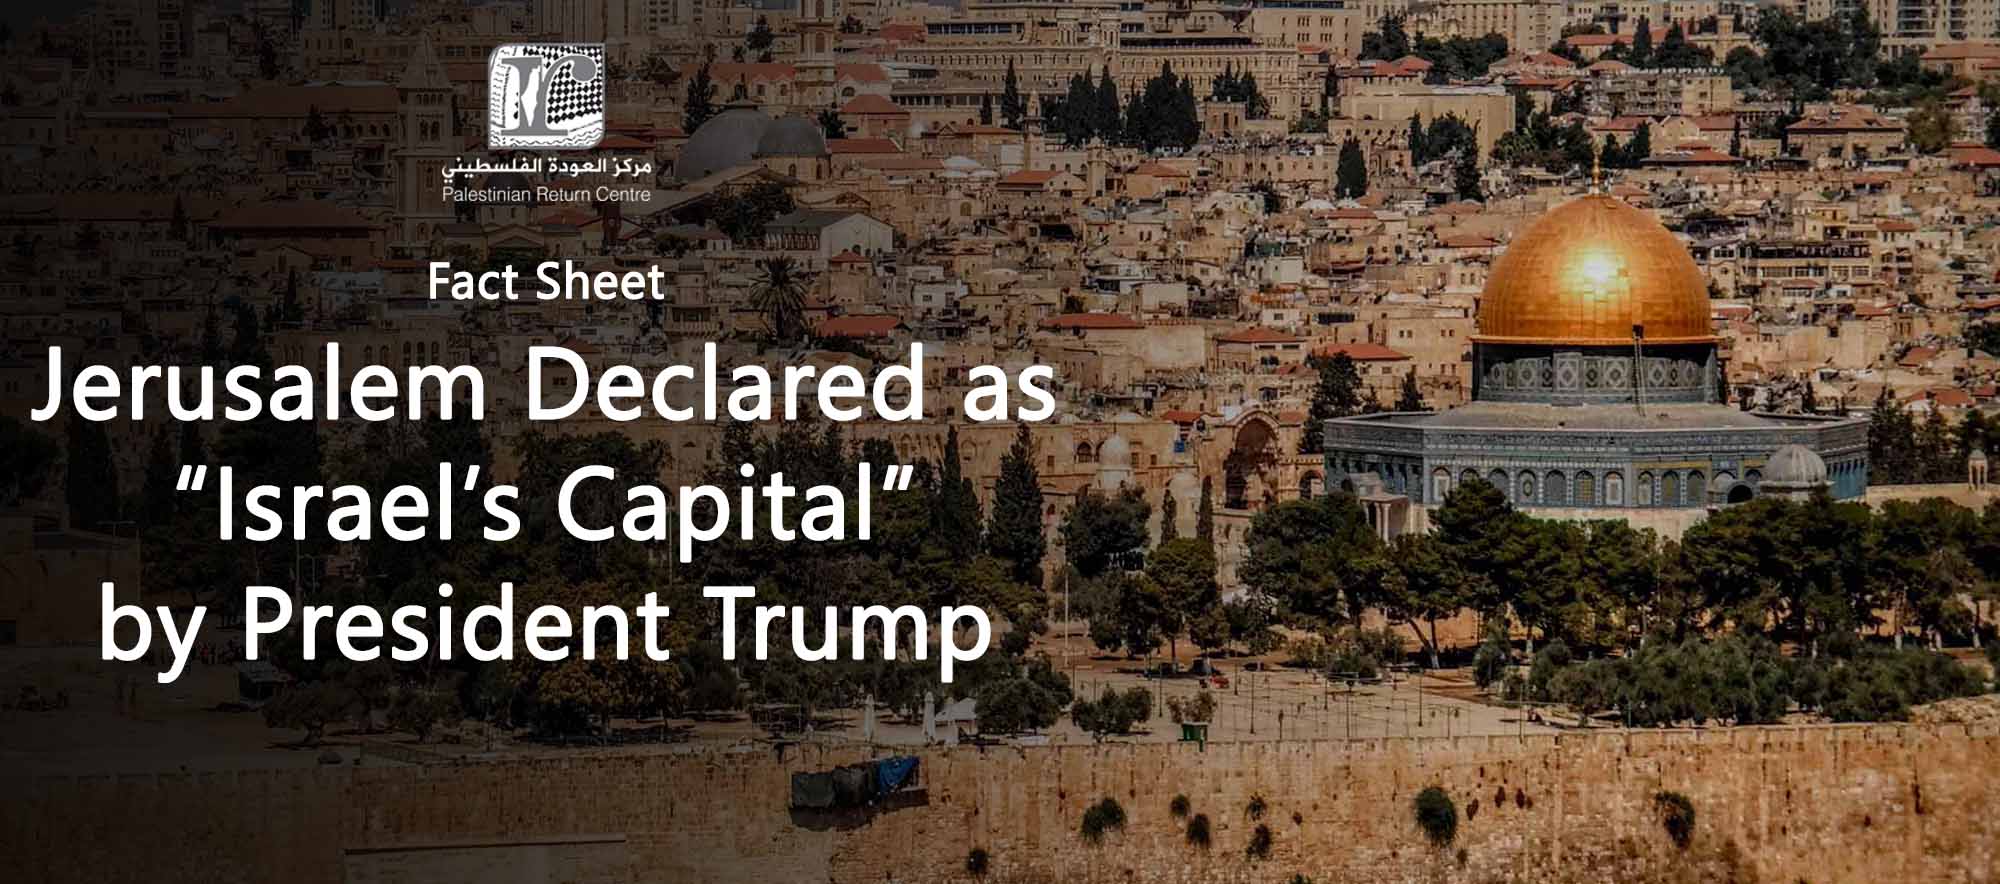 مركز العودة يراسل أعضاء البرلمان البريطاني حول تطورات قضية مدينة القدس